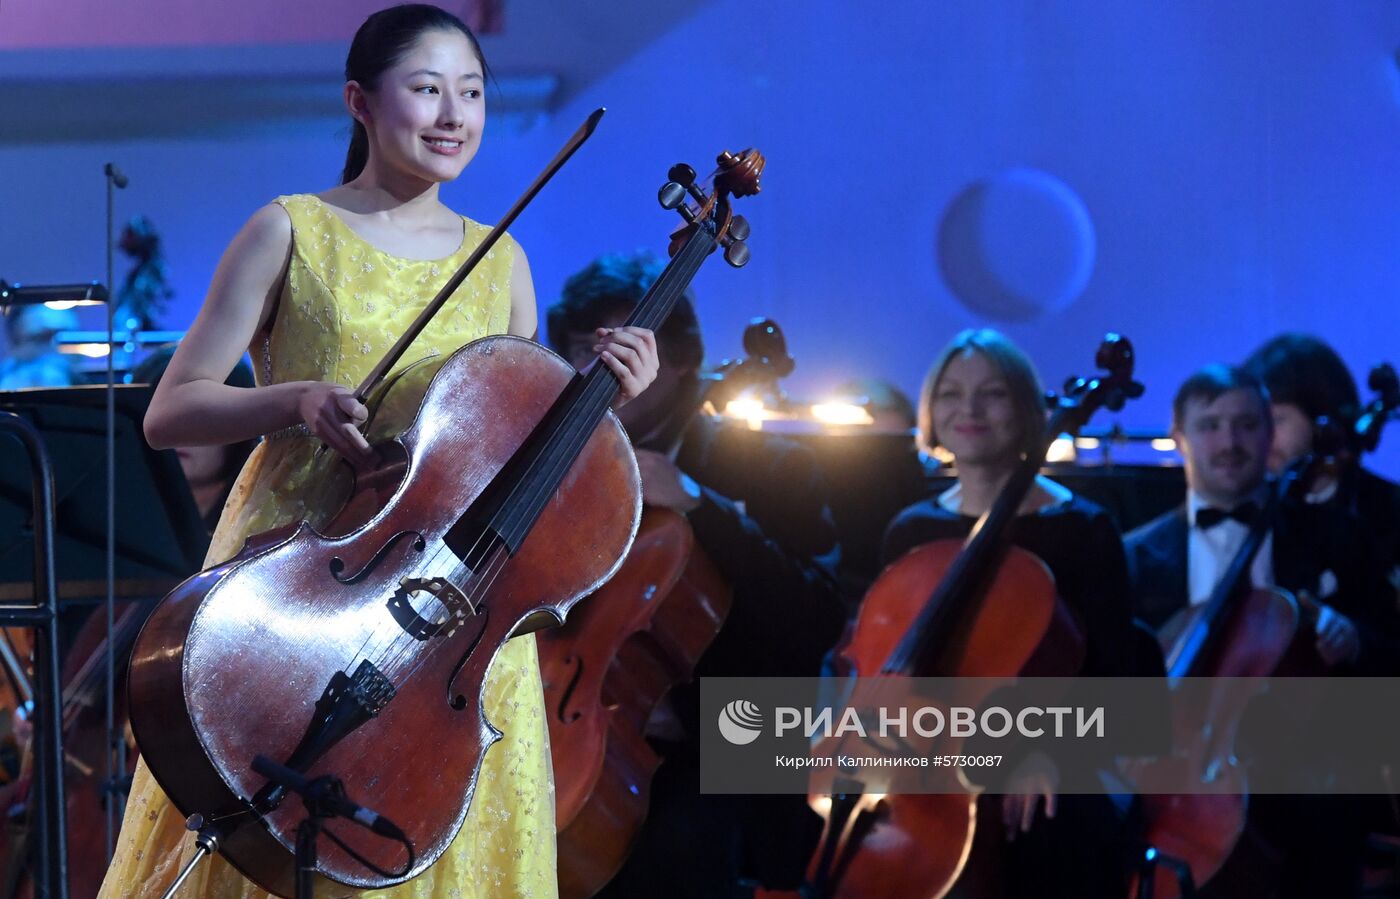 Закрытие Международного телевизионного конкурса юных музыкантов "Щелкунчик"